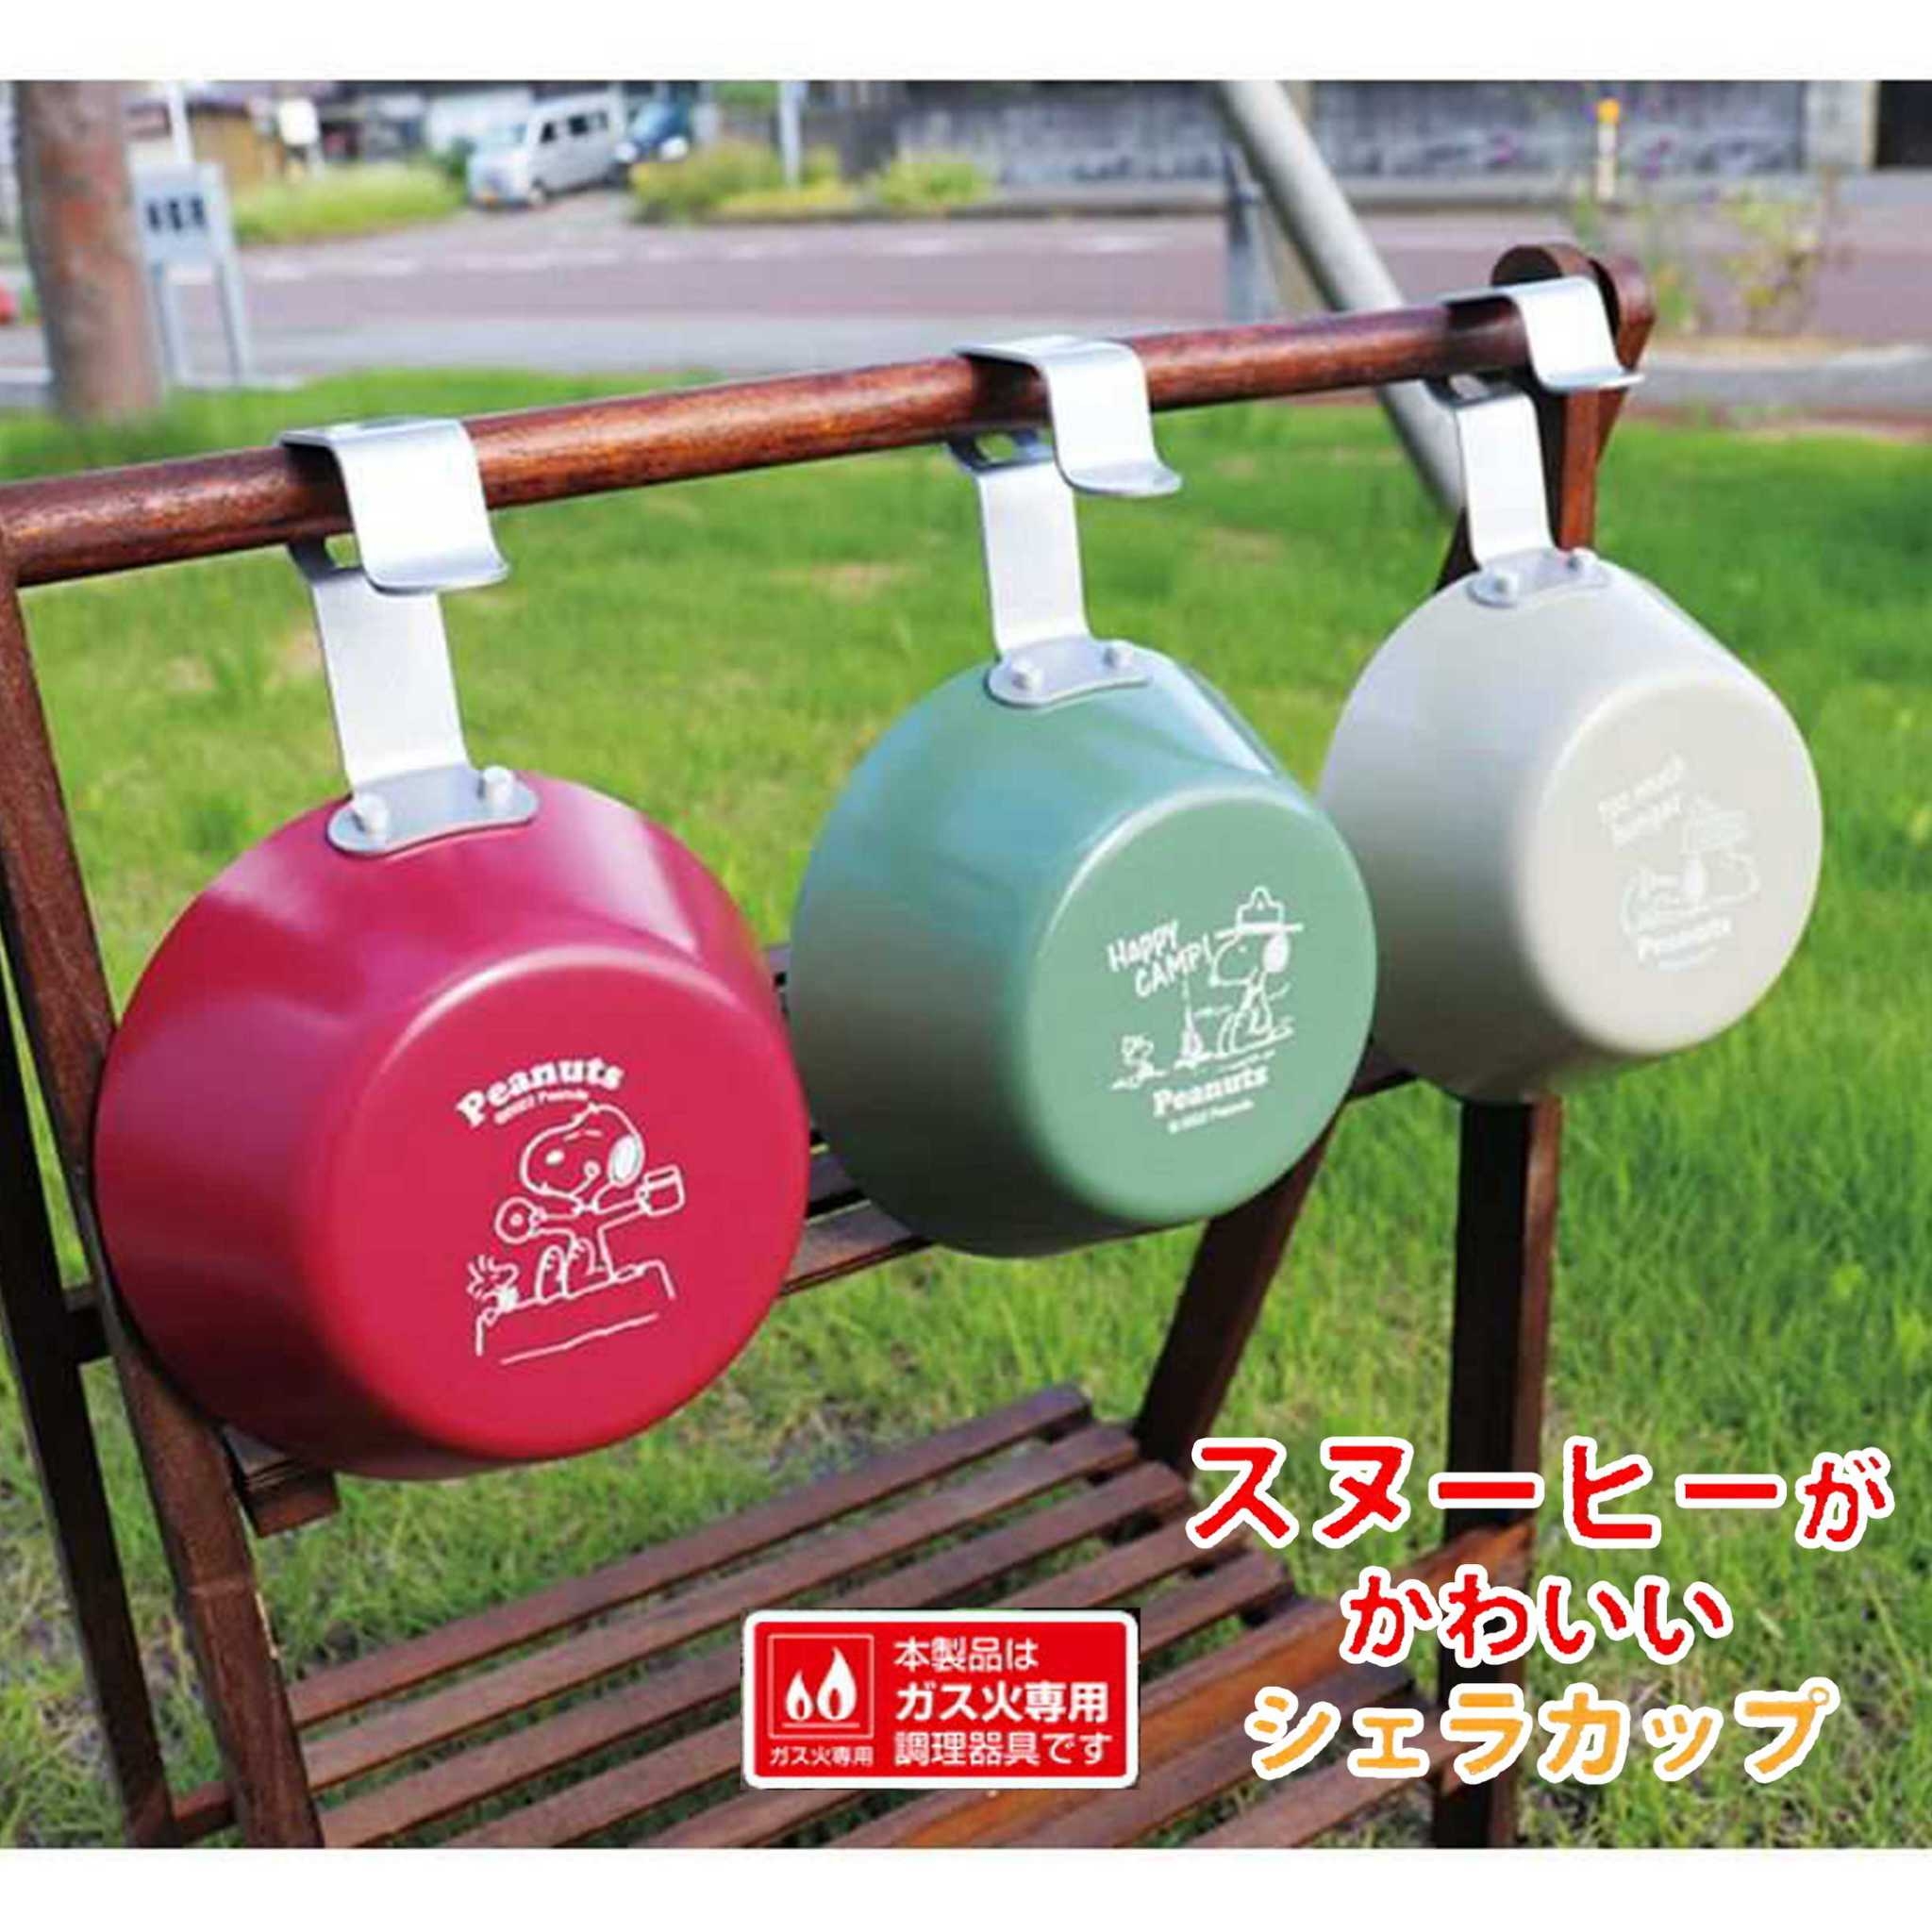 露營用不鏽鋼湯杯 360ml-史努比 SNOOPY PEANUTS 日本進口正版授權